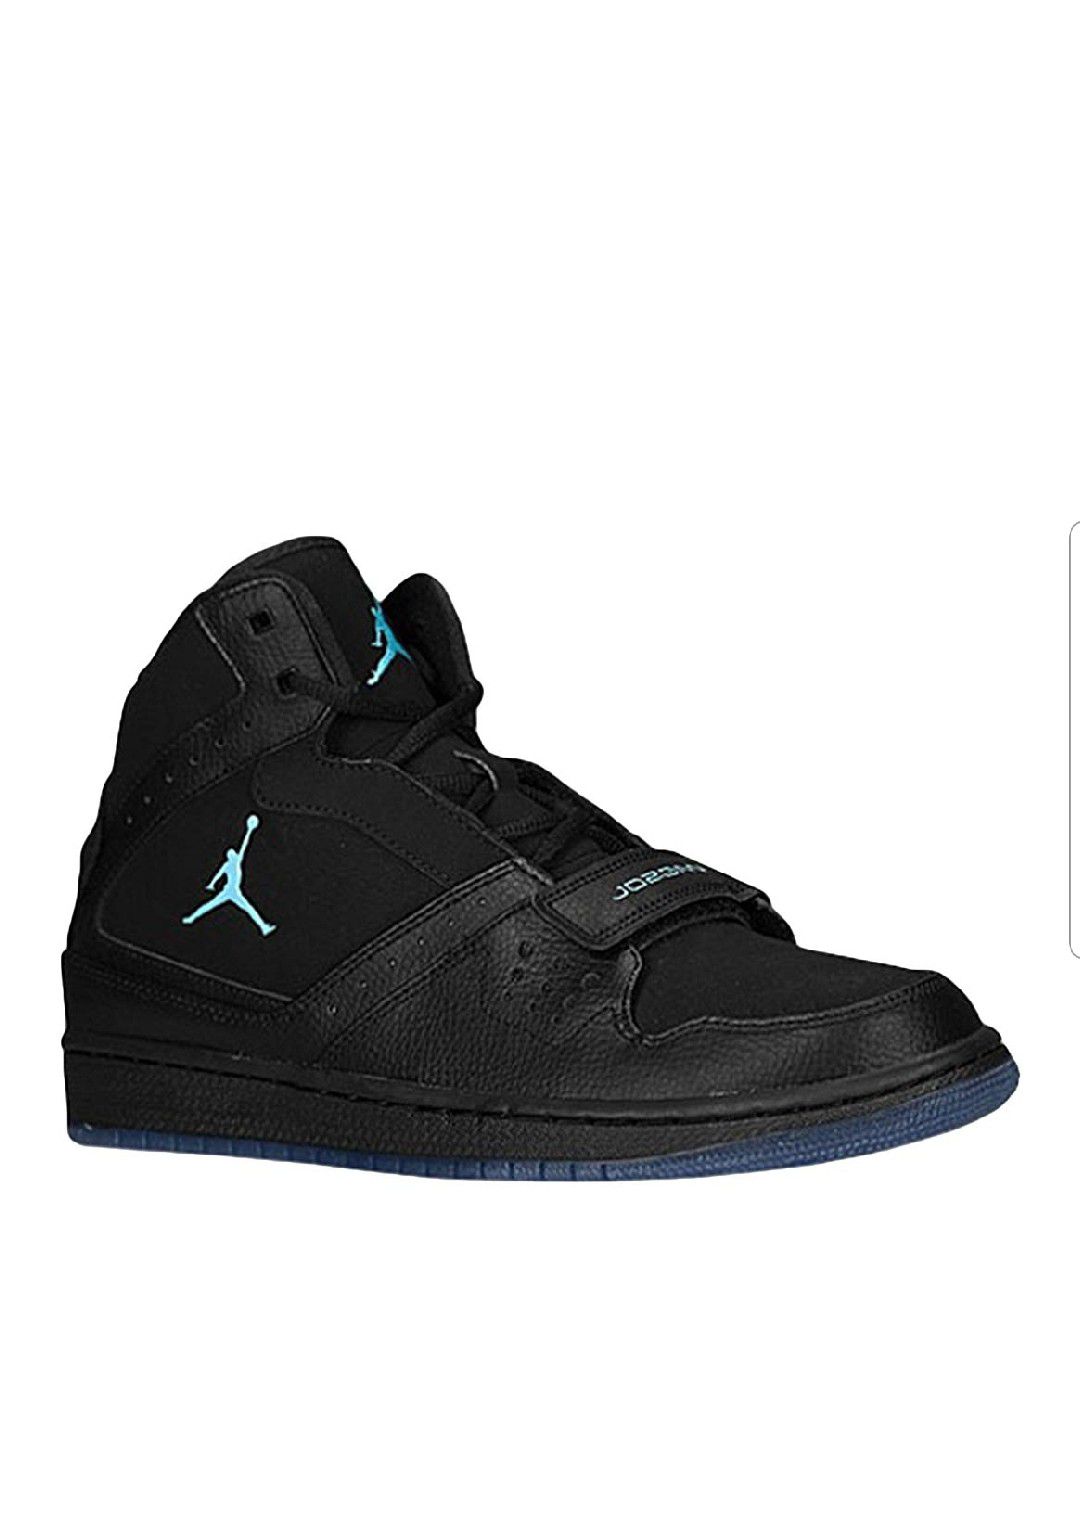 Men's Nike Air Jordan 1 Flight Strap 628584-045 Black Red Sneakers Size 11